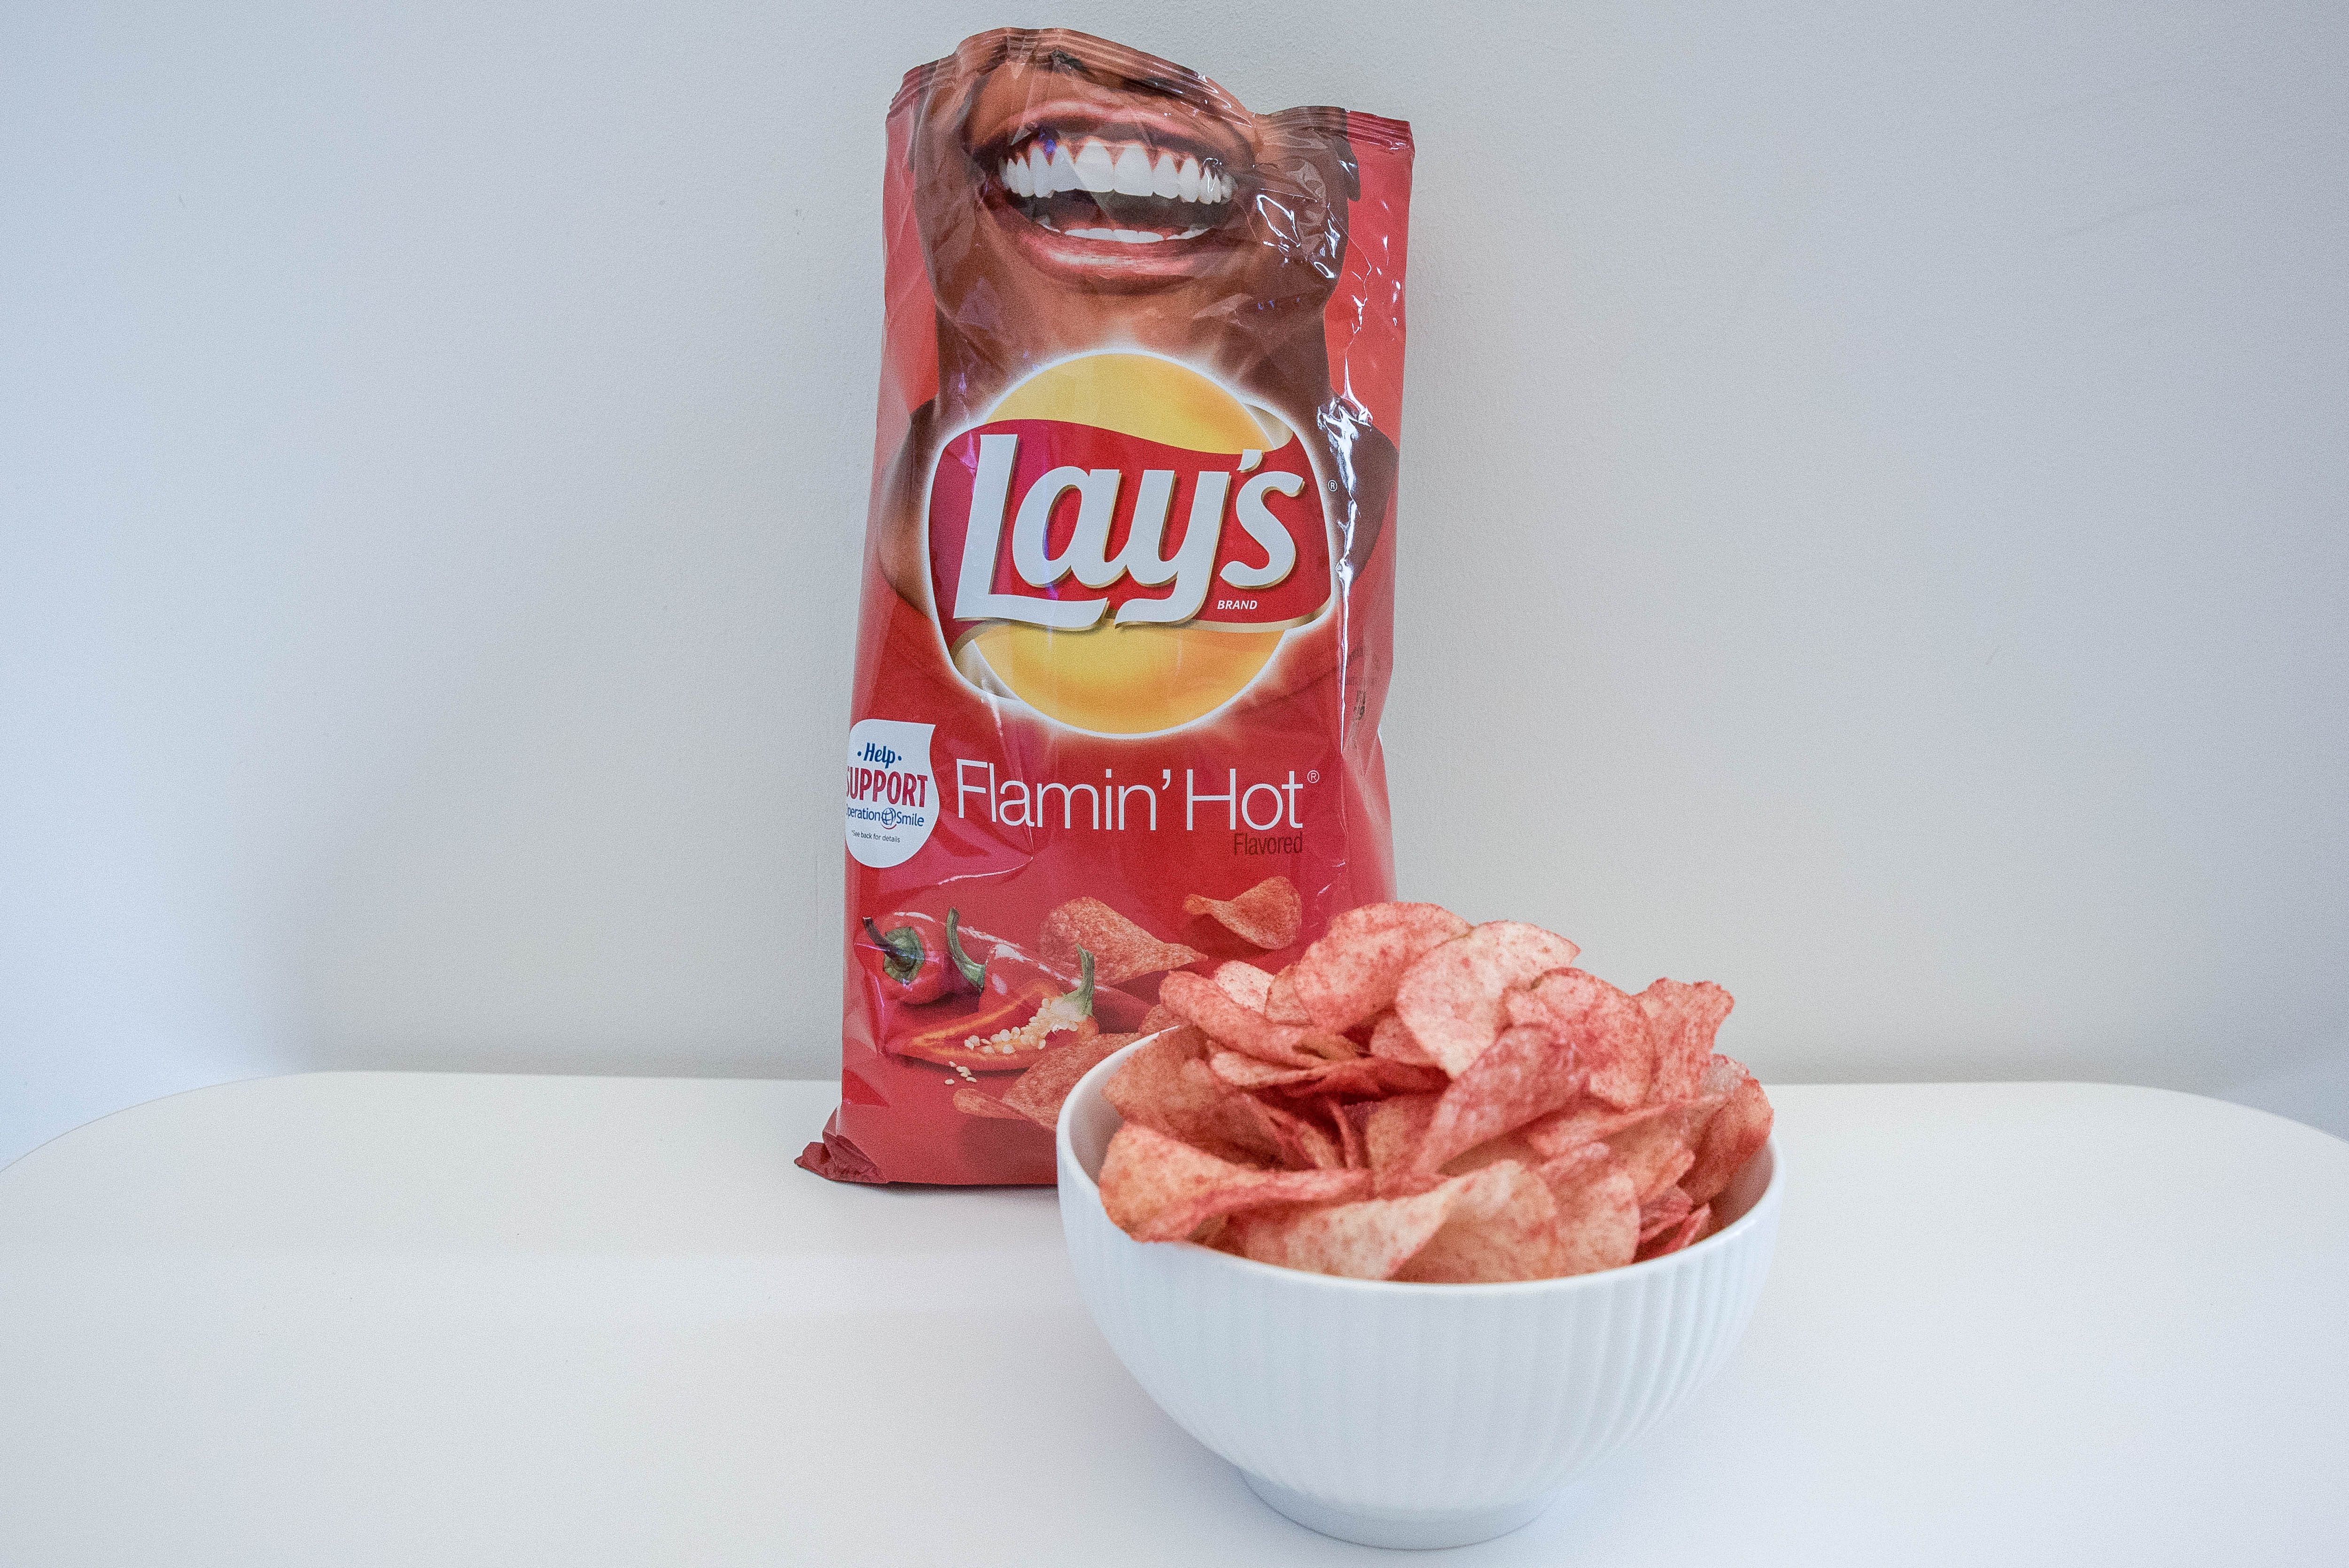 Best Spicy Chips We Found in a Taste Test